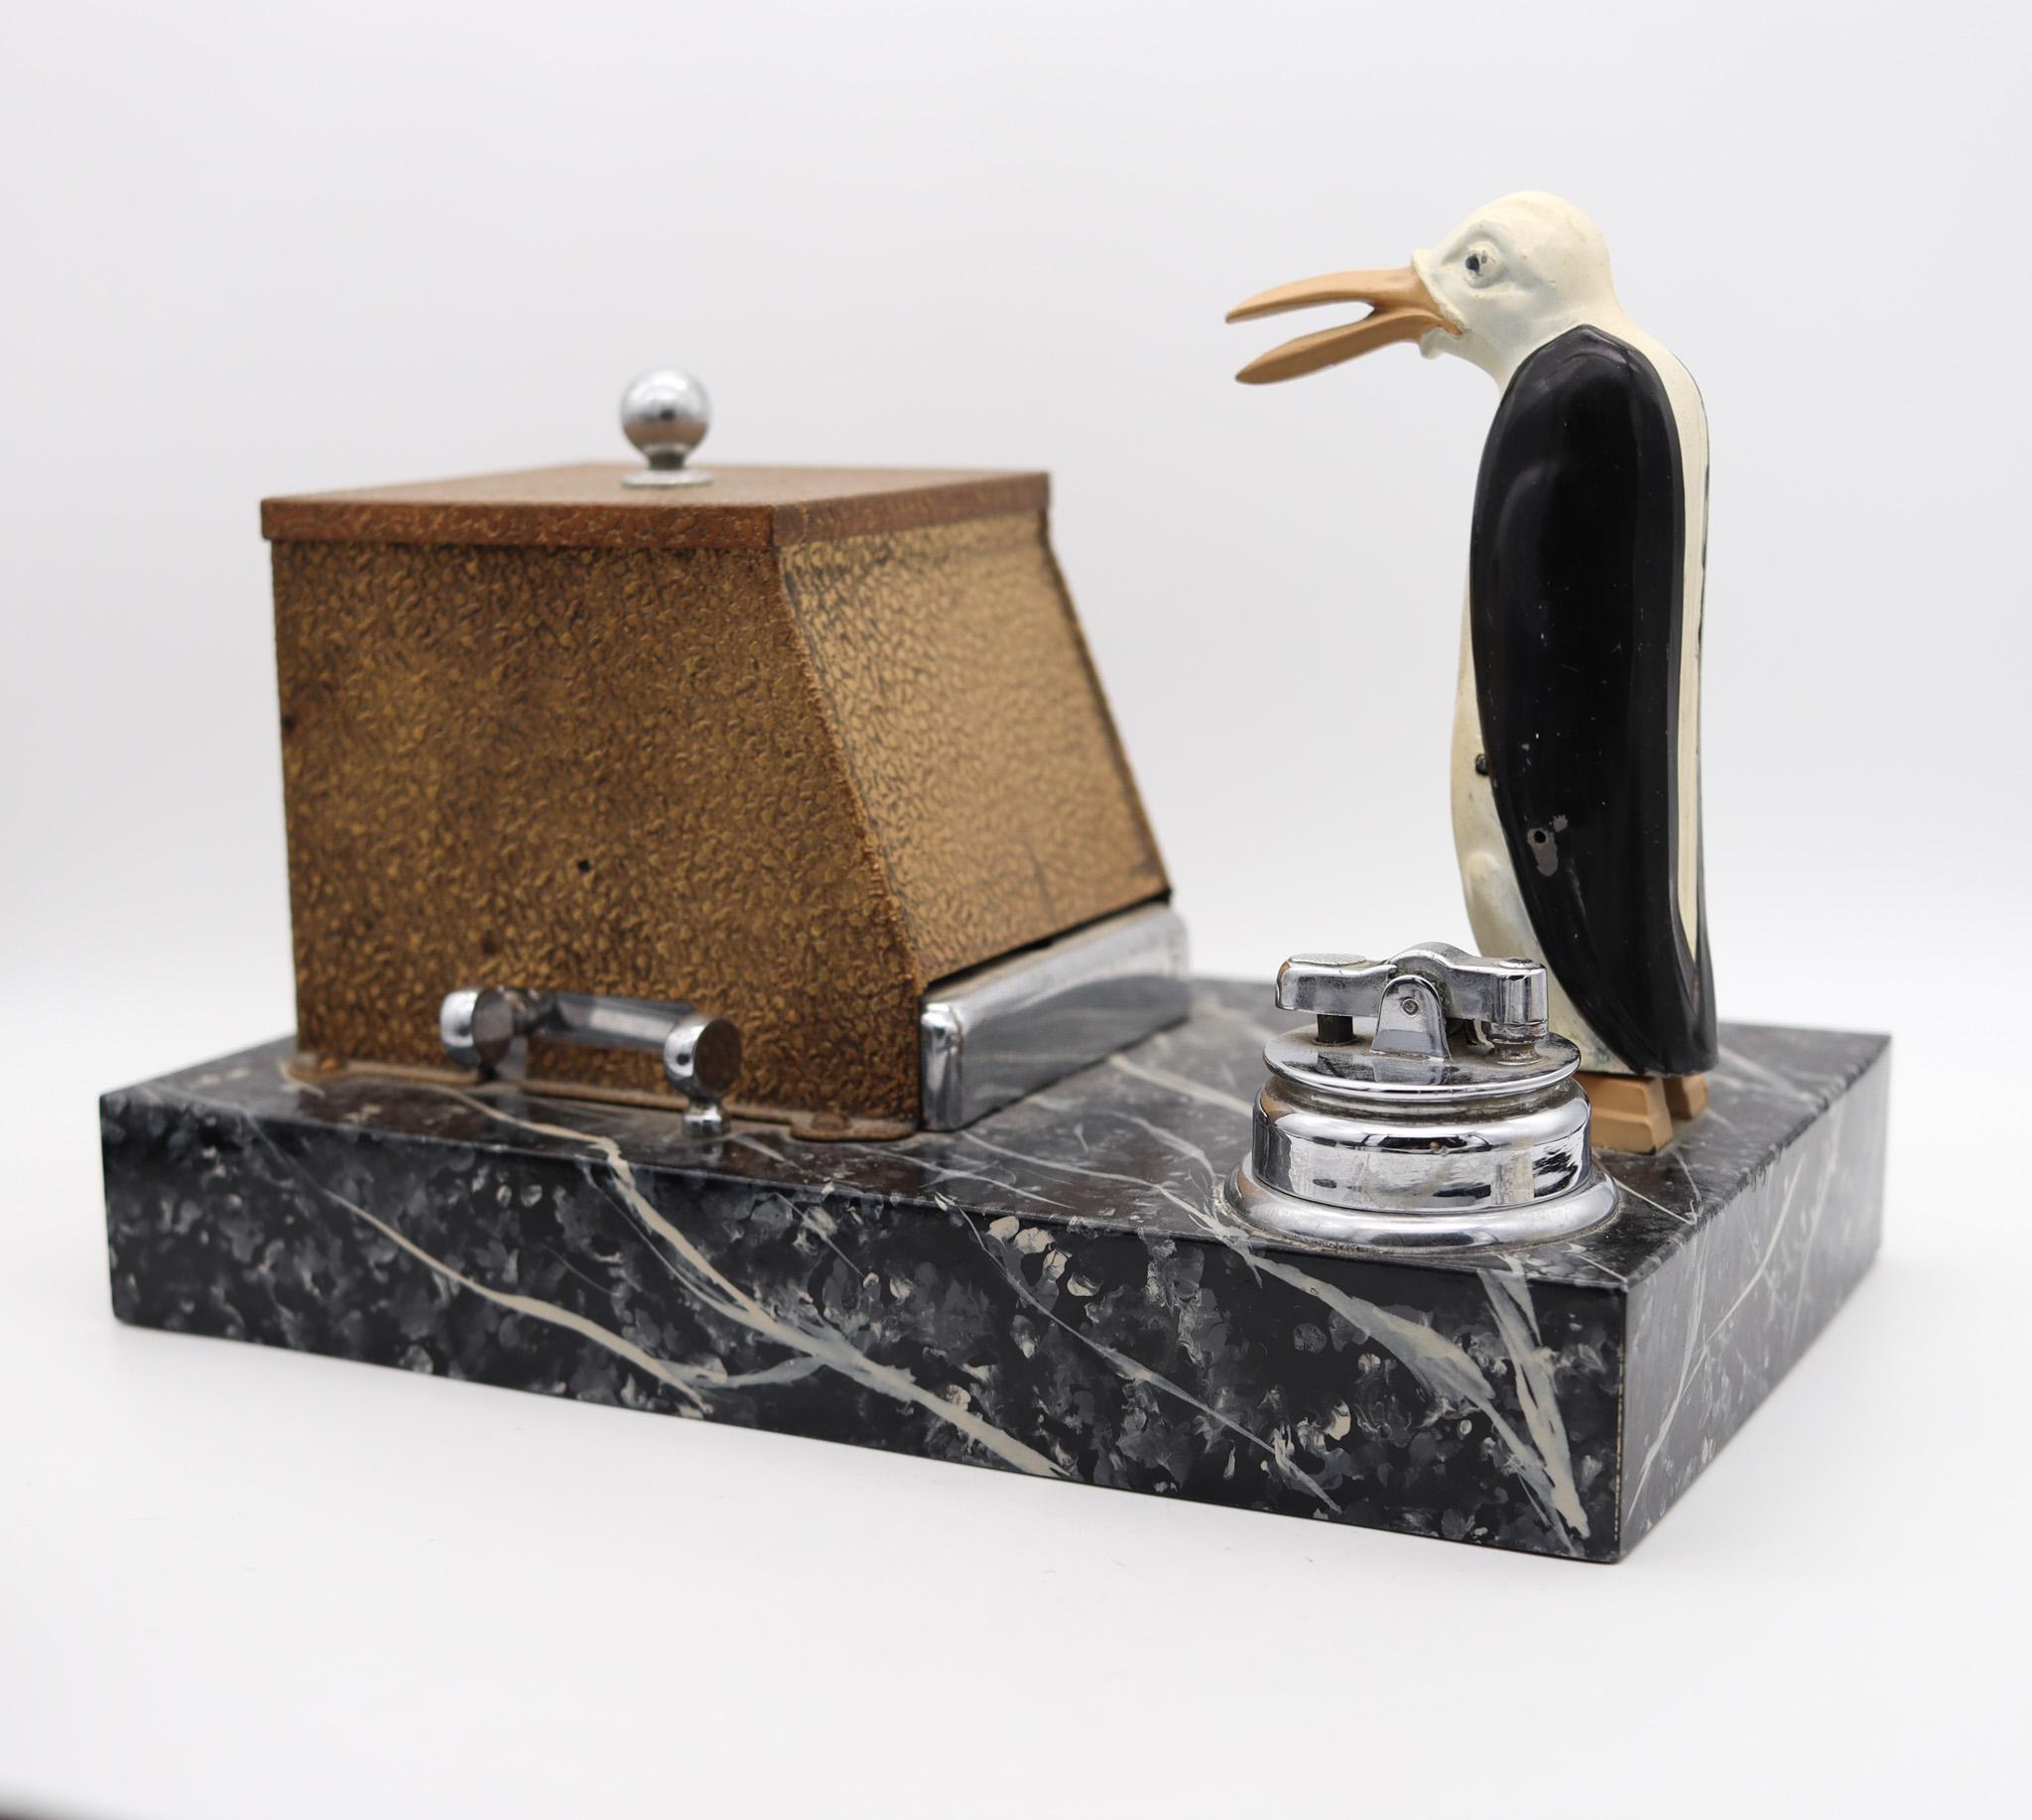 Mechanische Art-déco-Spenderbox mit magischem Pinguin, entworfen von Ronson.

Eine schöne, äußerst seltene und sehr dekorative mechanische Spender-Schreibtischbox, die in der Stadt Newark, New Jersey in den Vereinigten Staaten von The Ronson Art